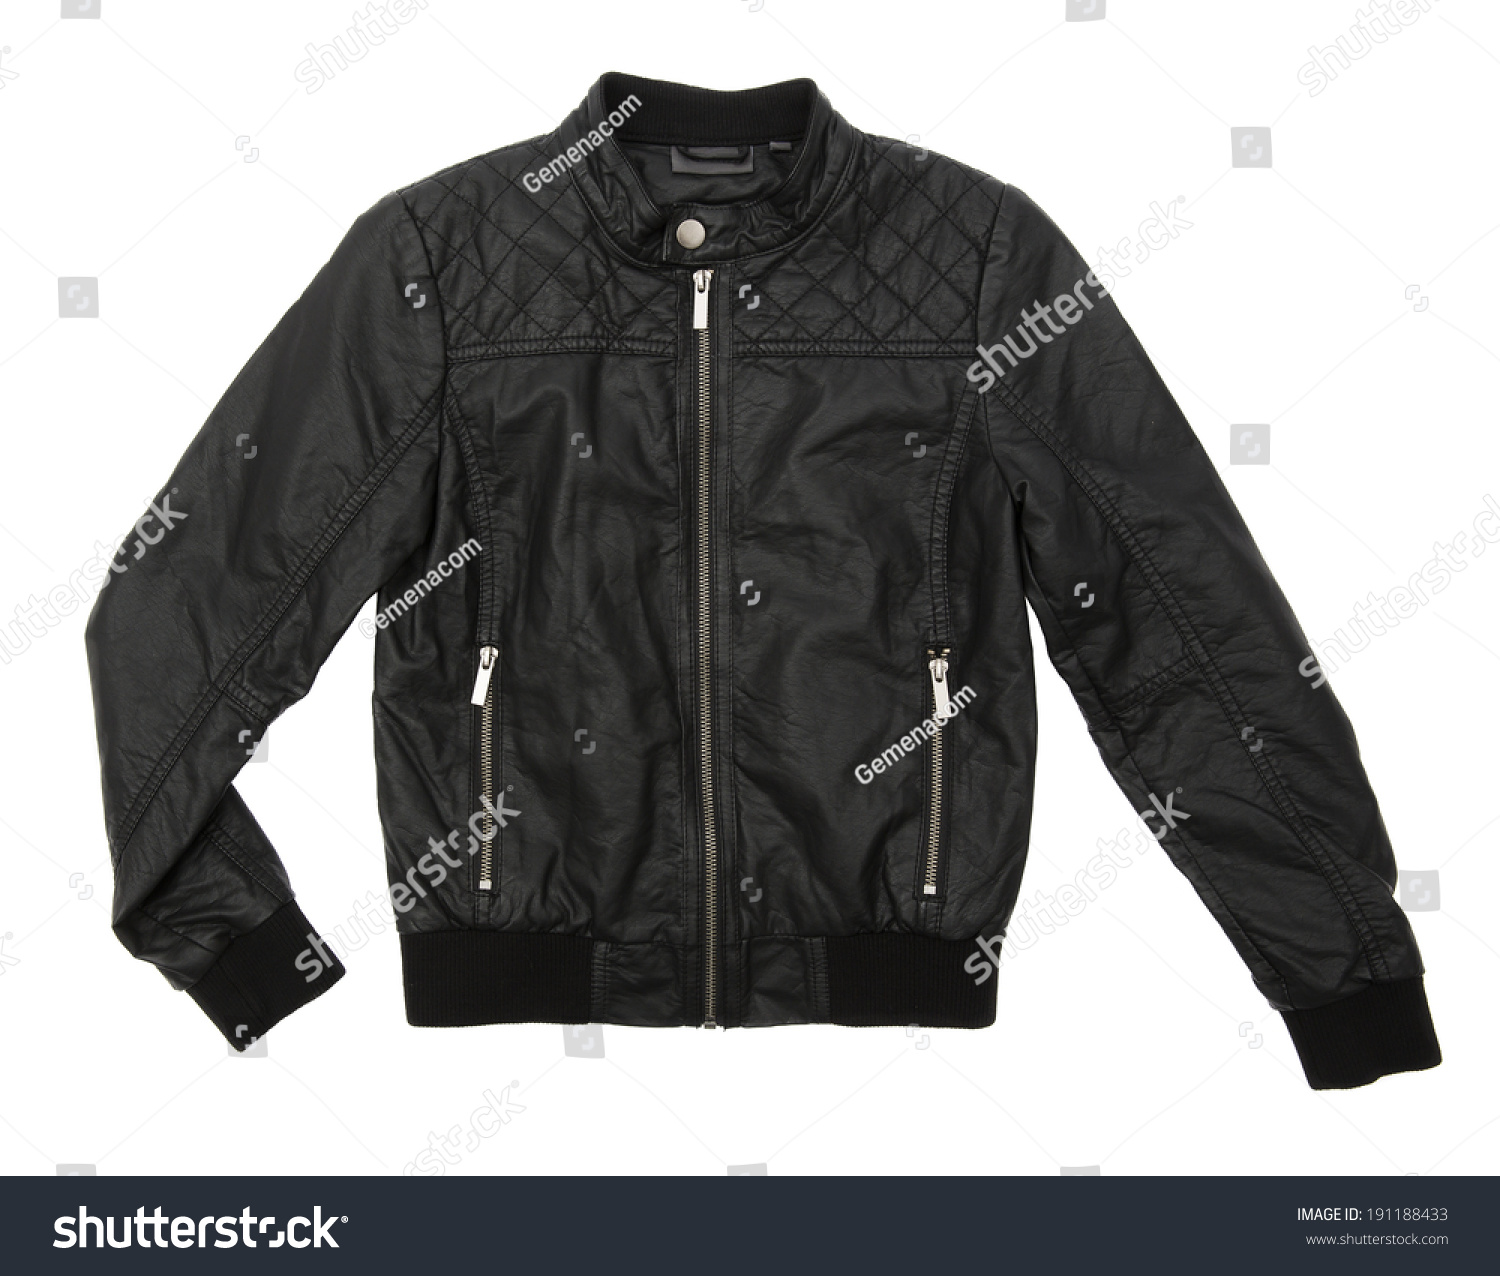 Black leather jacket isolated on white background #191188433